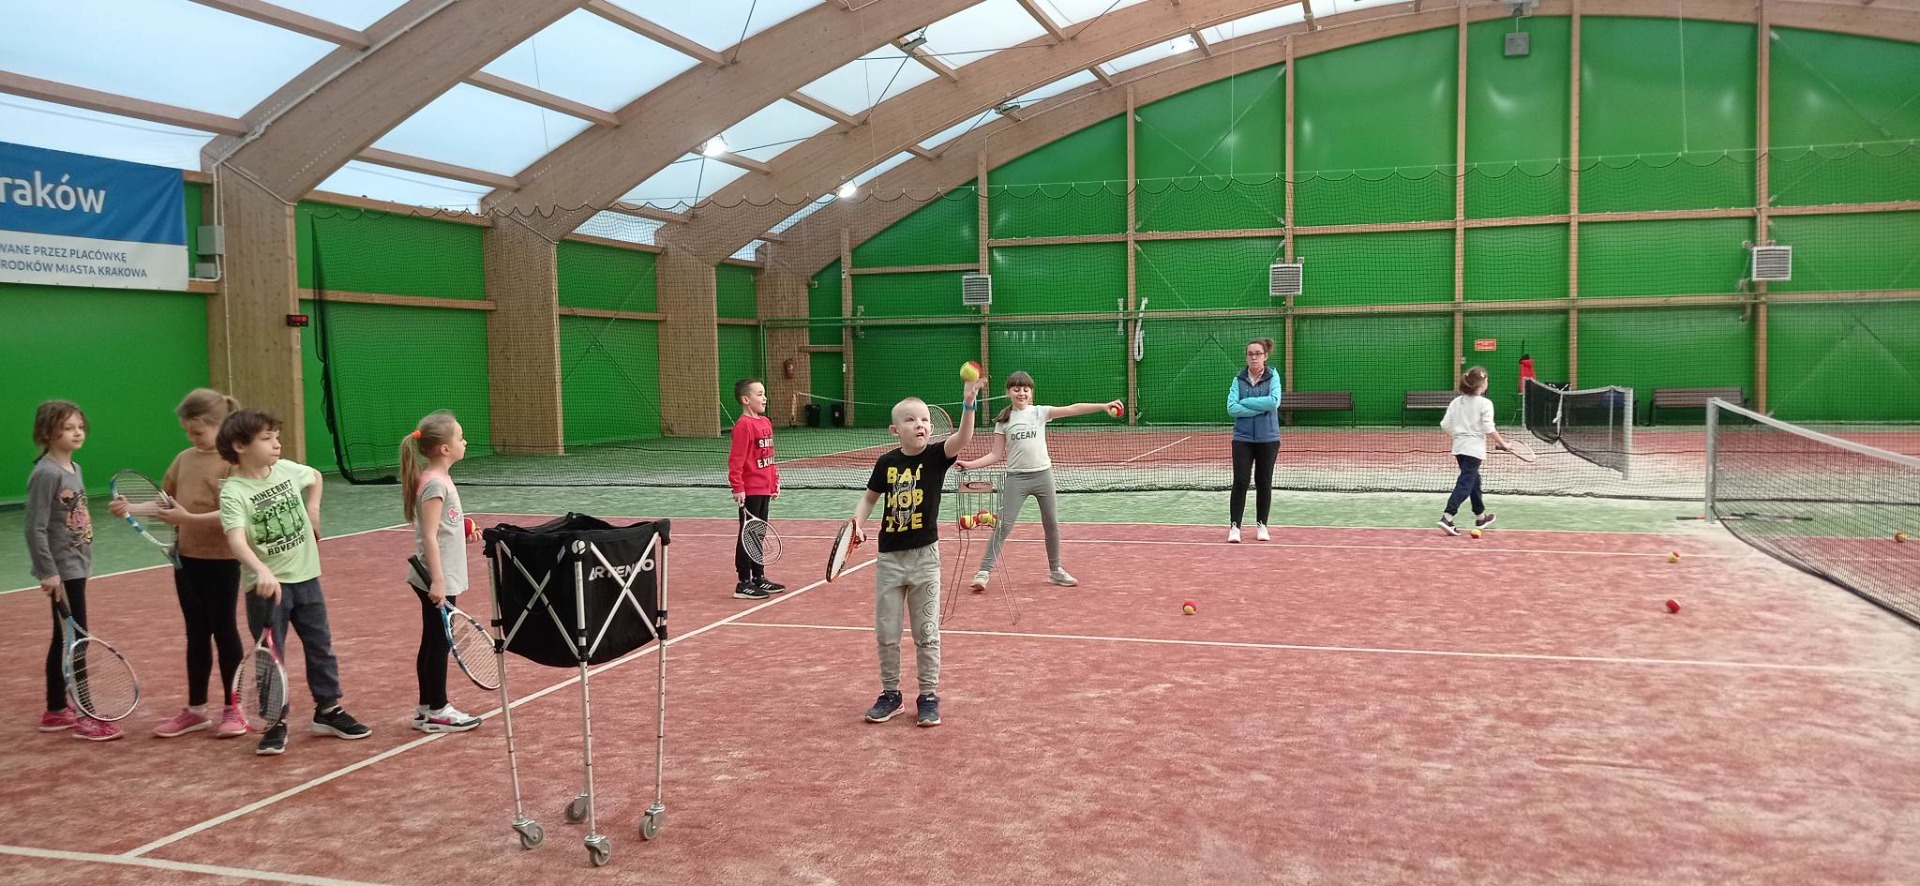 Klasa 2 dzielnie uczy się grać w tenisa ziemnego! BRAWO!👏👍💖 - Obrazek 1